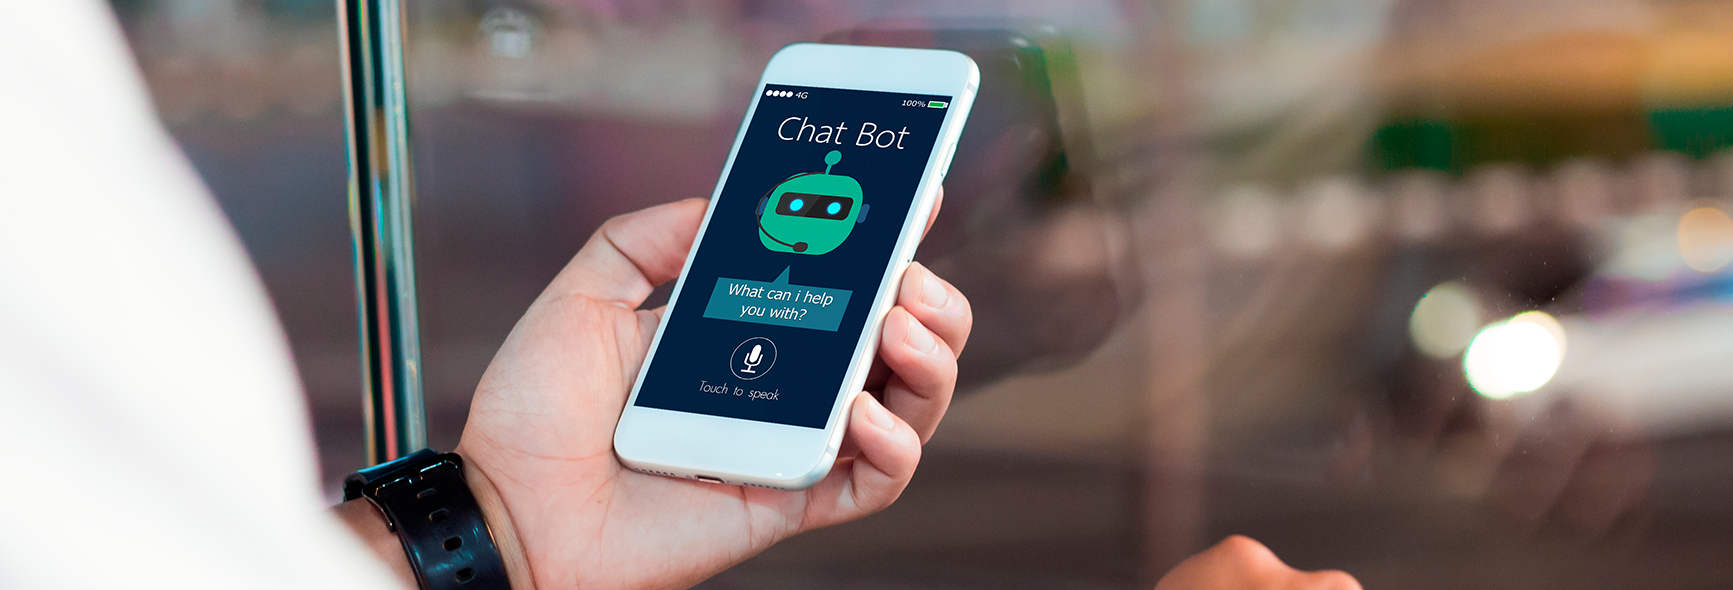 Un usuario mantiene una conversación con un chatbot a través de su teléfono móvil.